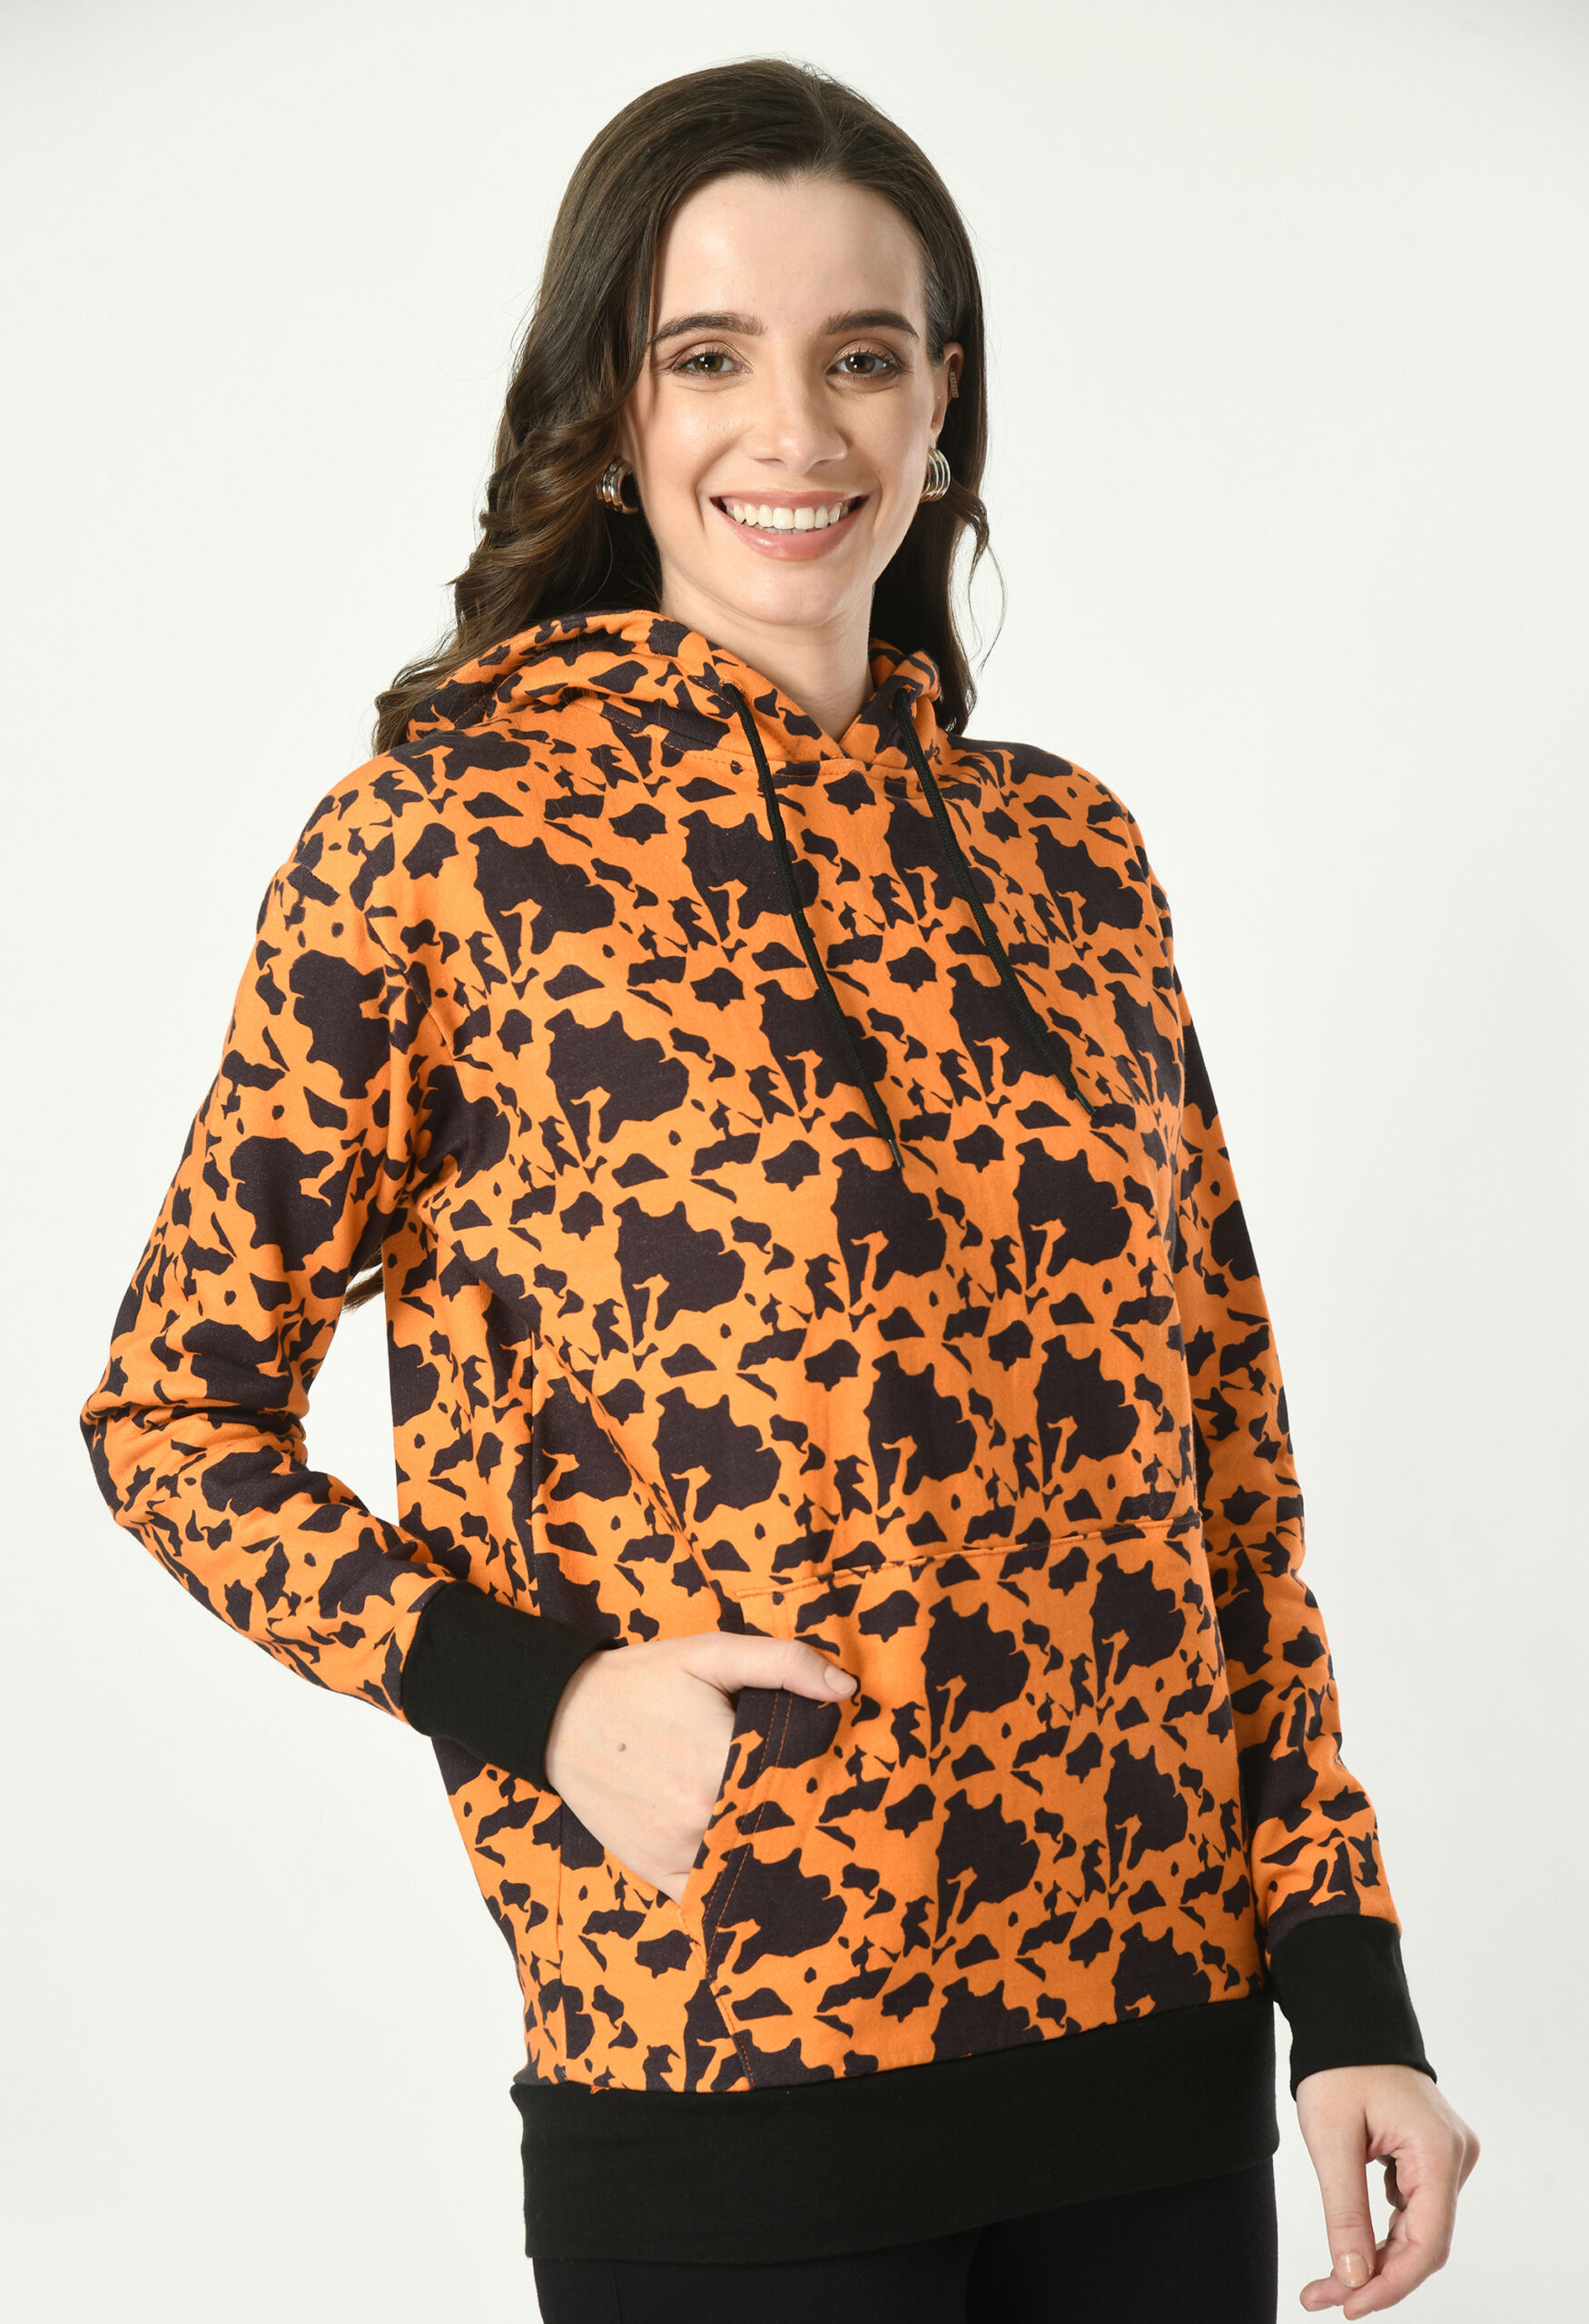 Printed Hoodies for Women - Orange on Black - 5